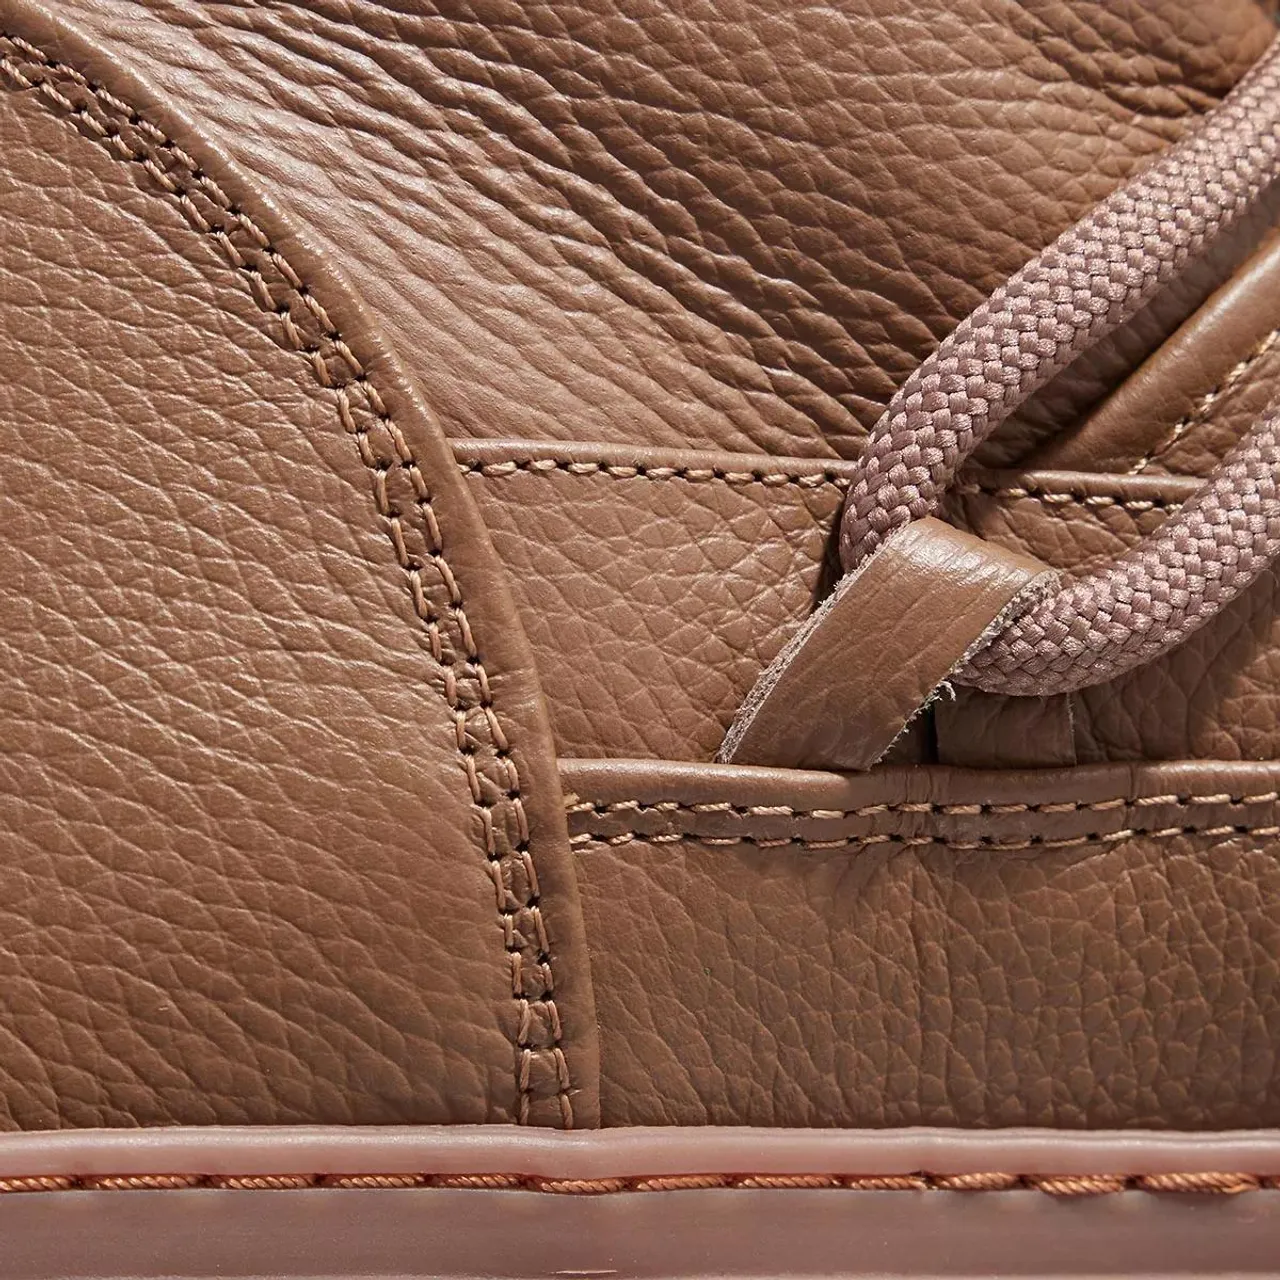 INUIKII Boots & Stiefeletten - Full Leather